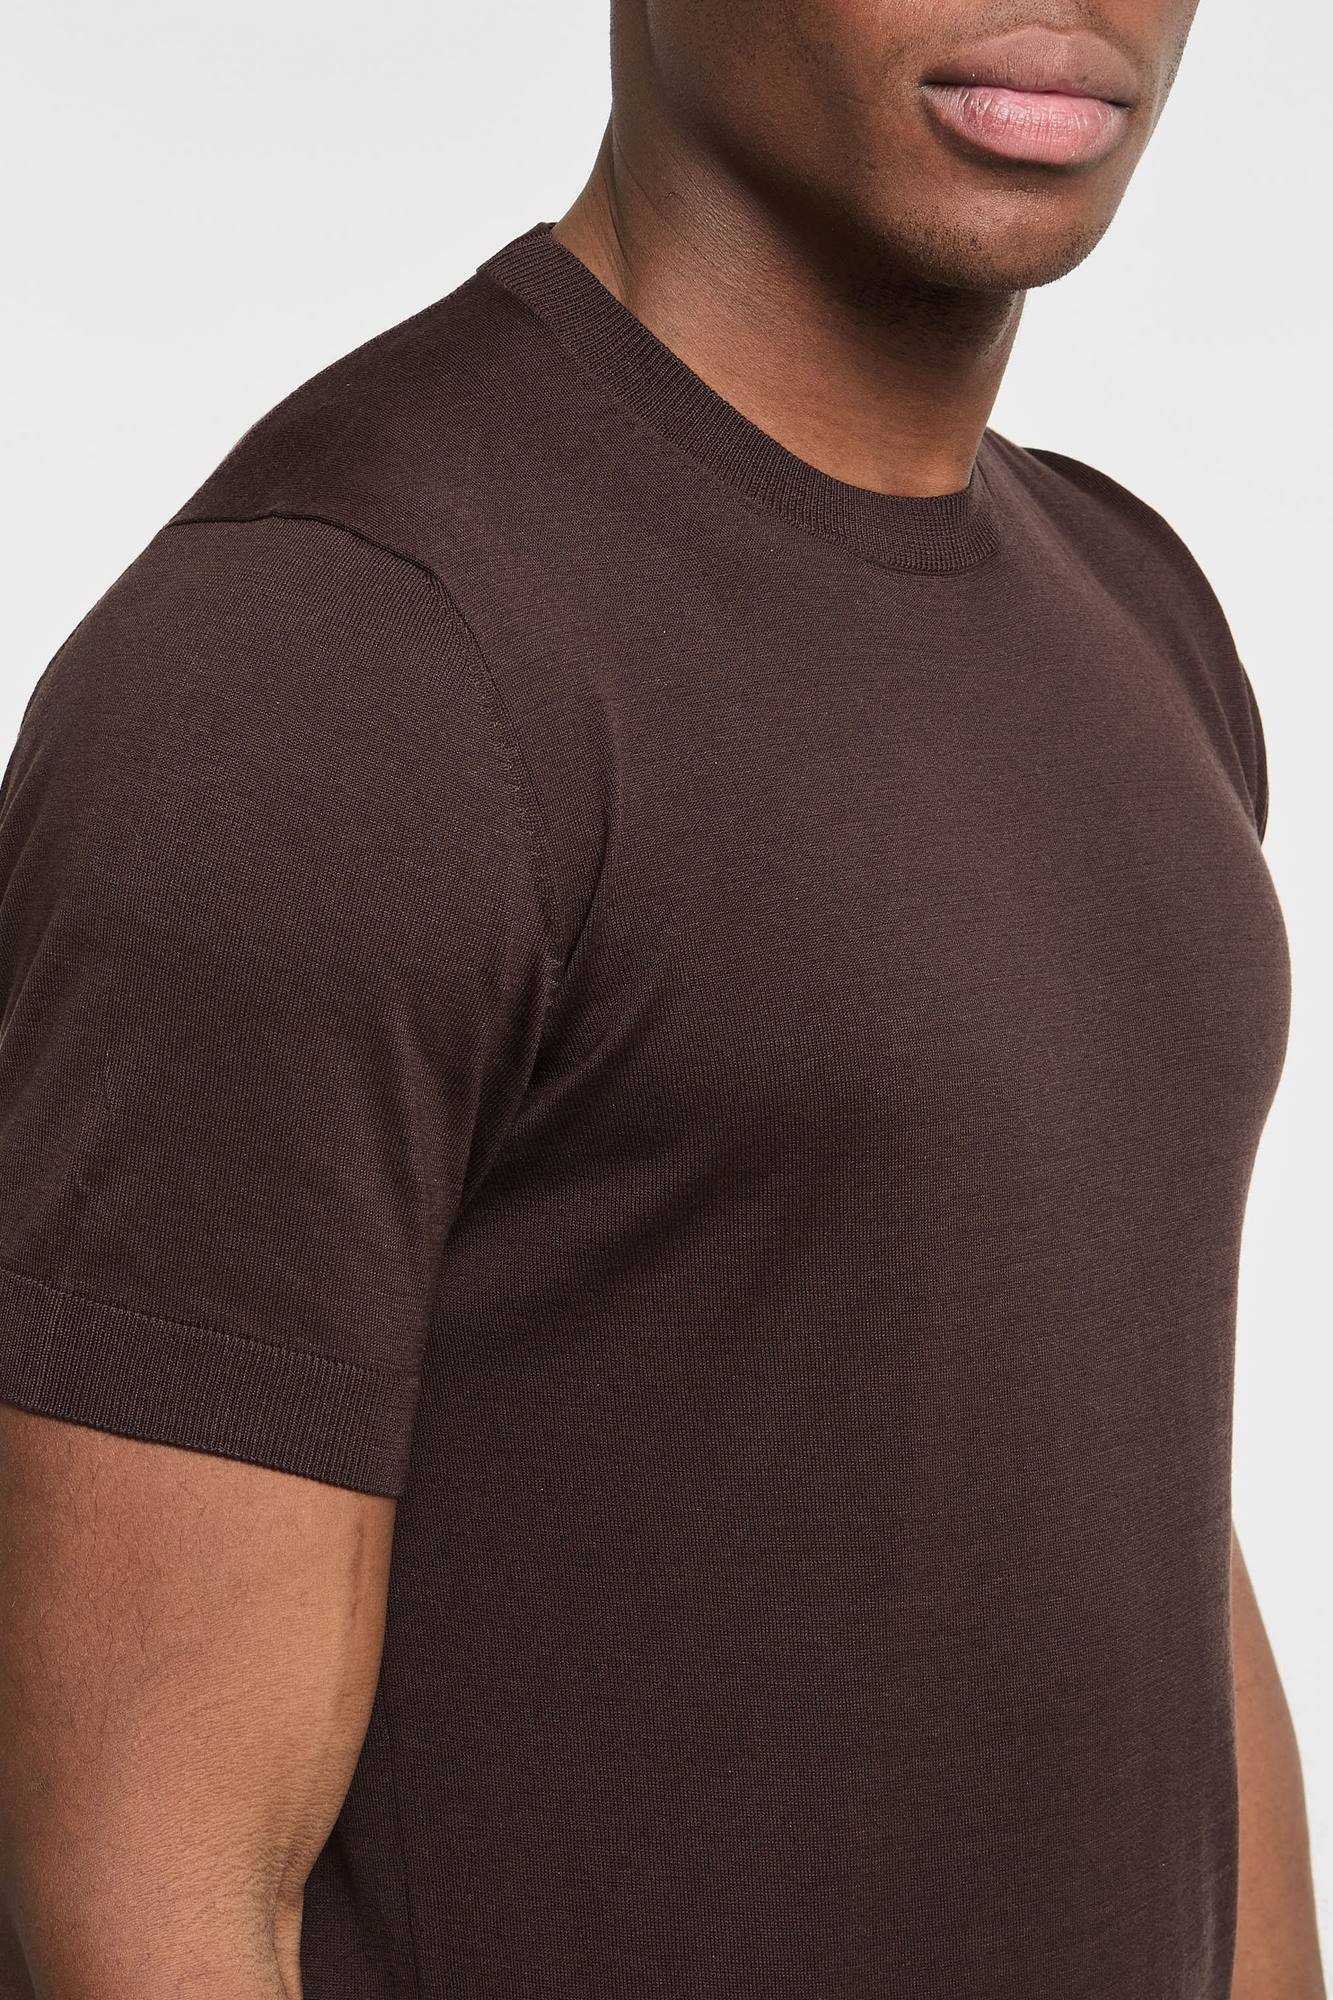 T-shirt in seta e cotone extrafine-5